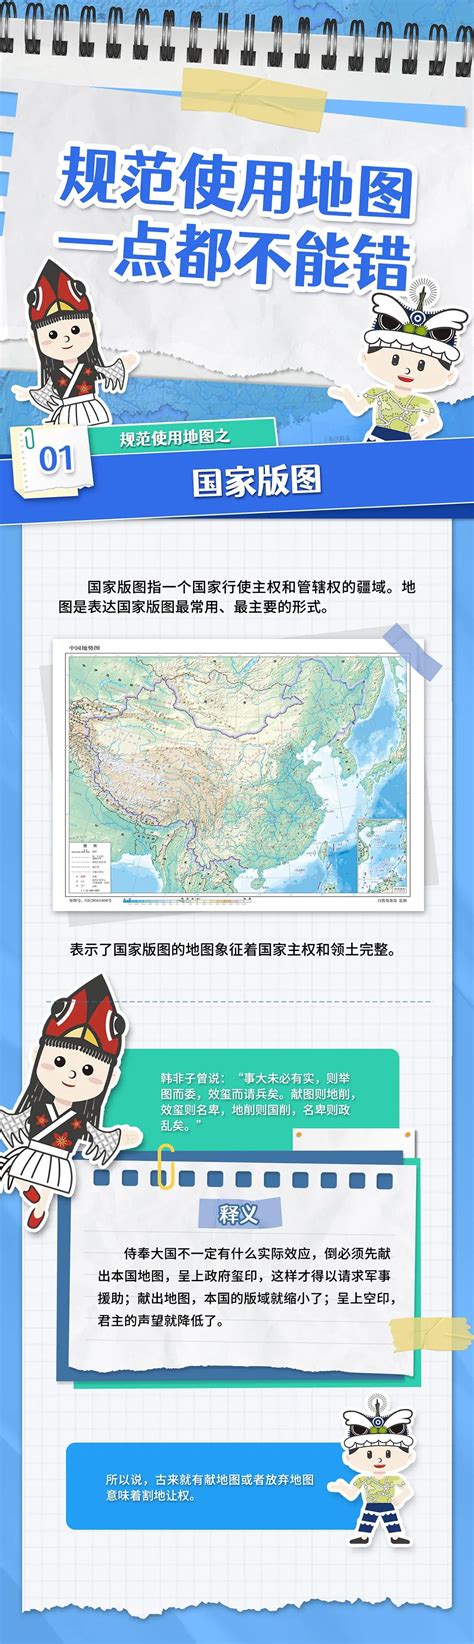 测绘法宣传日，规范使用地图，一点都不能错 - 企业新闻 - 广州蓝图地理信息技术有限公司